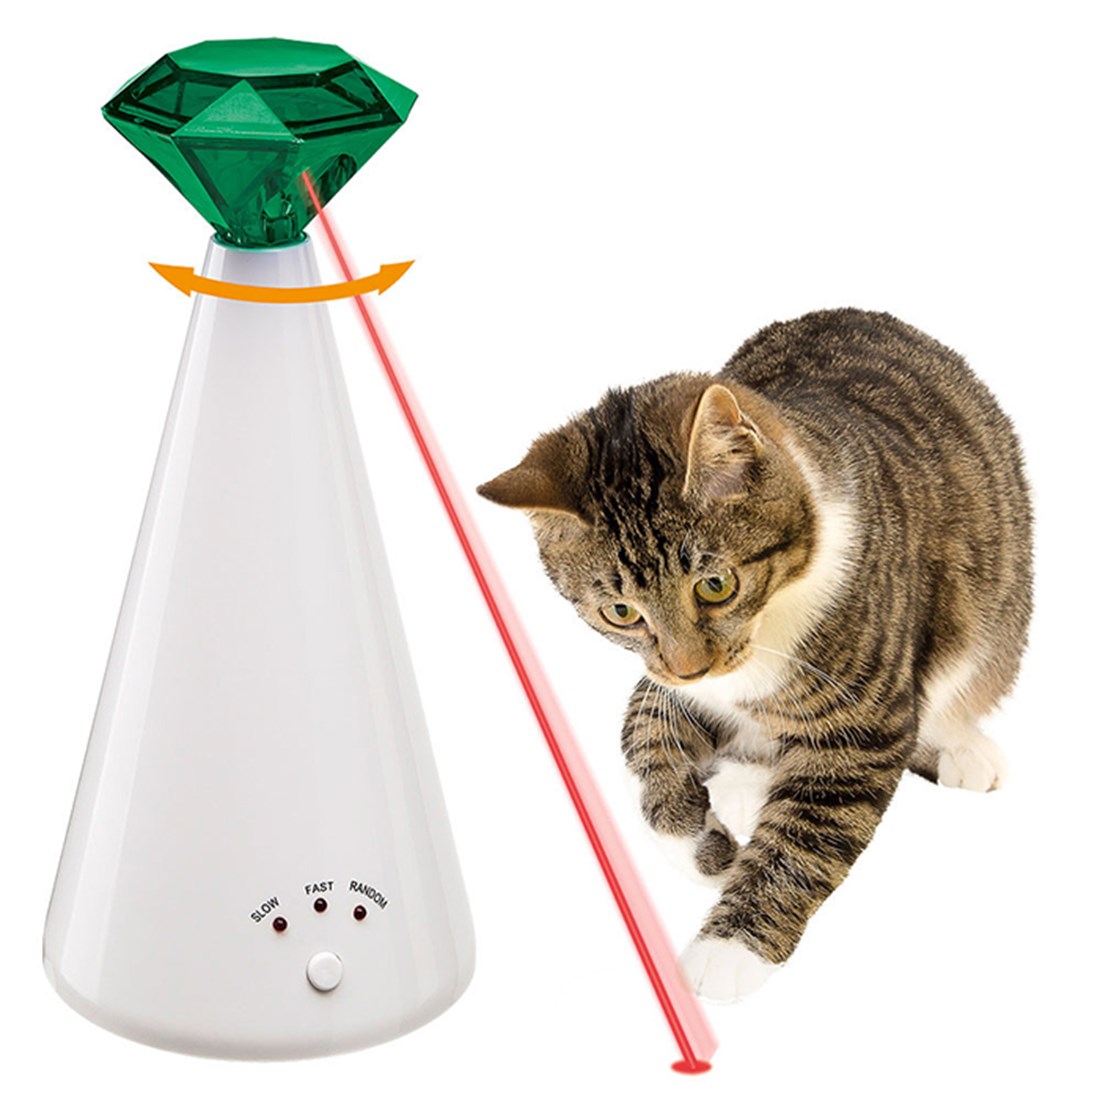 Озон игрушки для кошек. Игрушка лазерная Phantom (для кошек). Ферпласт игрушки для кошек. Лазерная указка для кота. Интерактивная игрушка Ferplast.